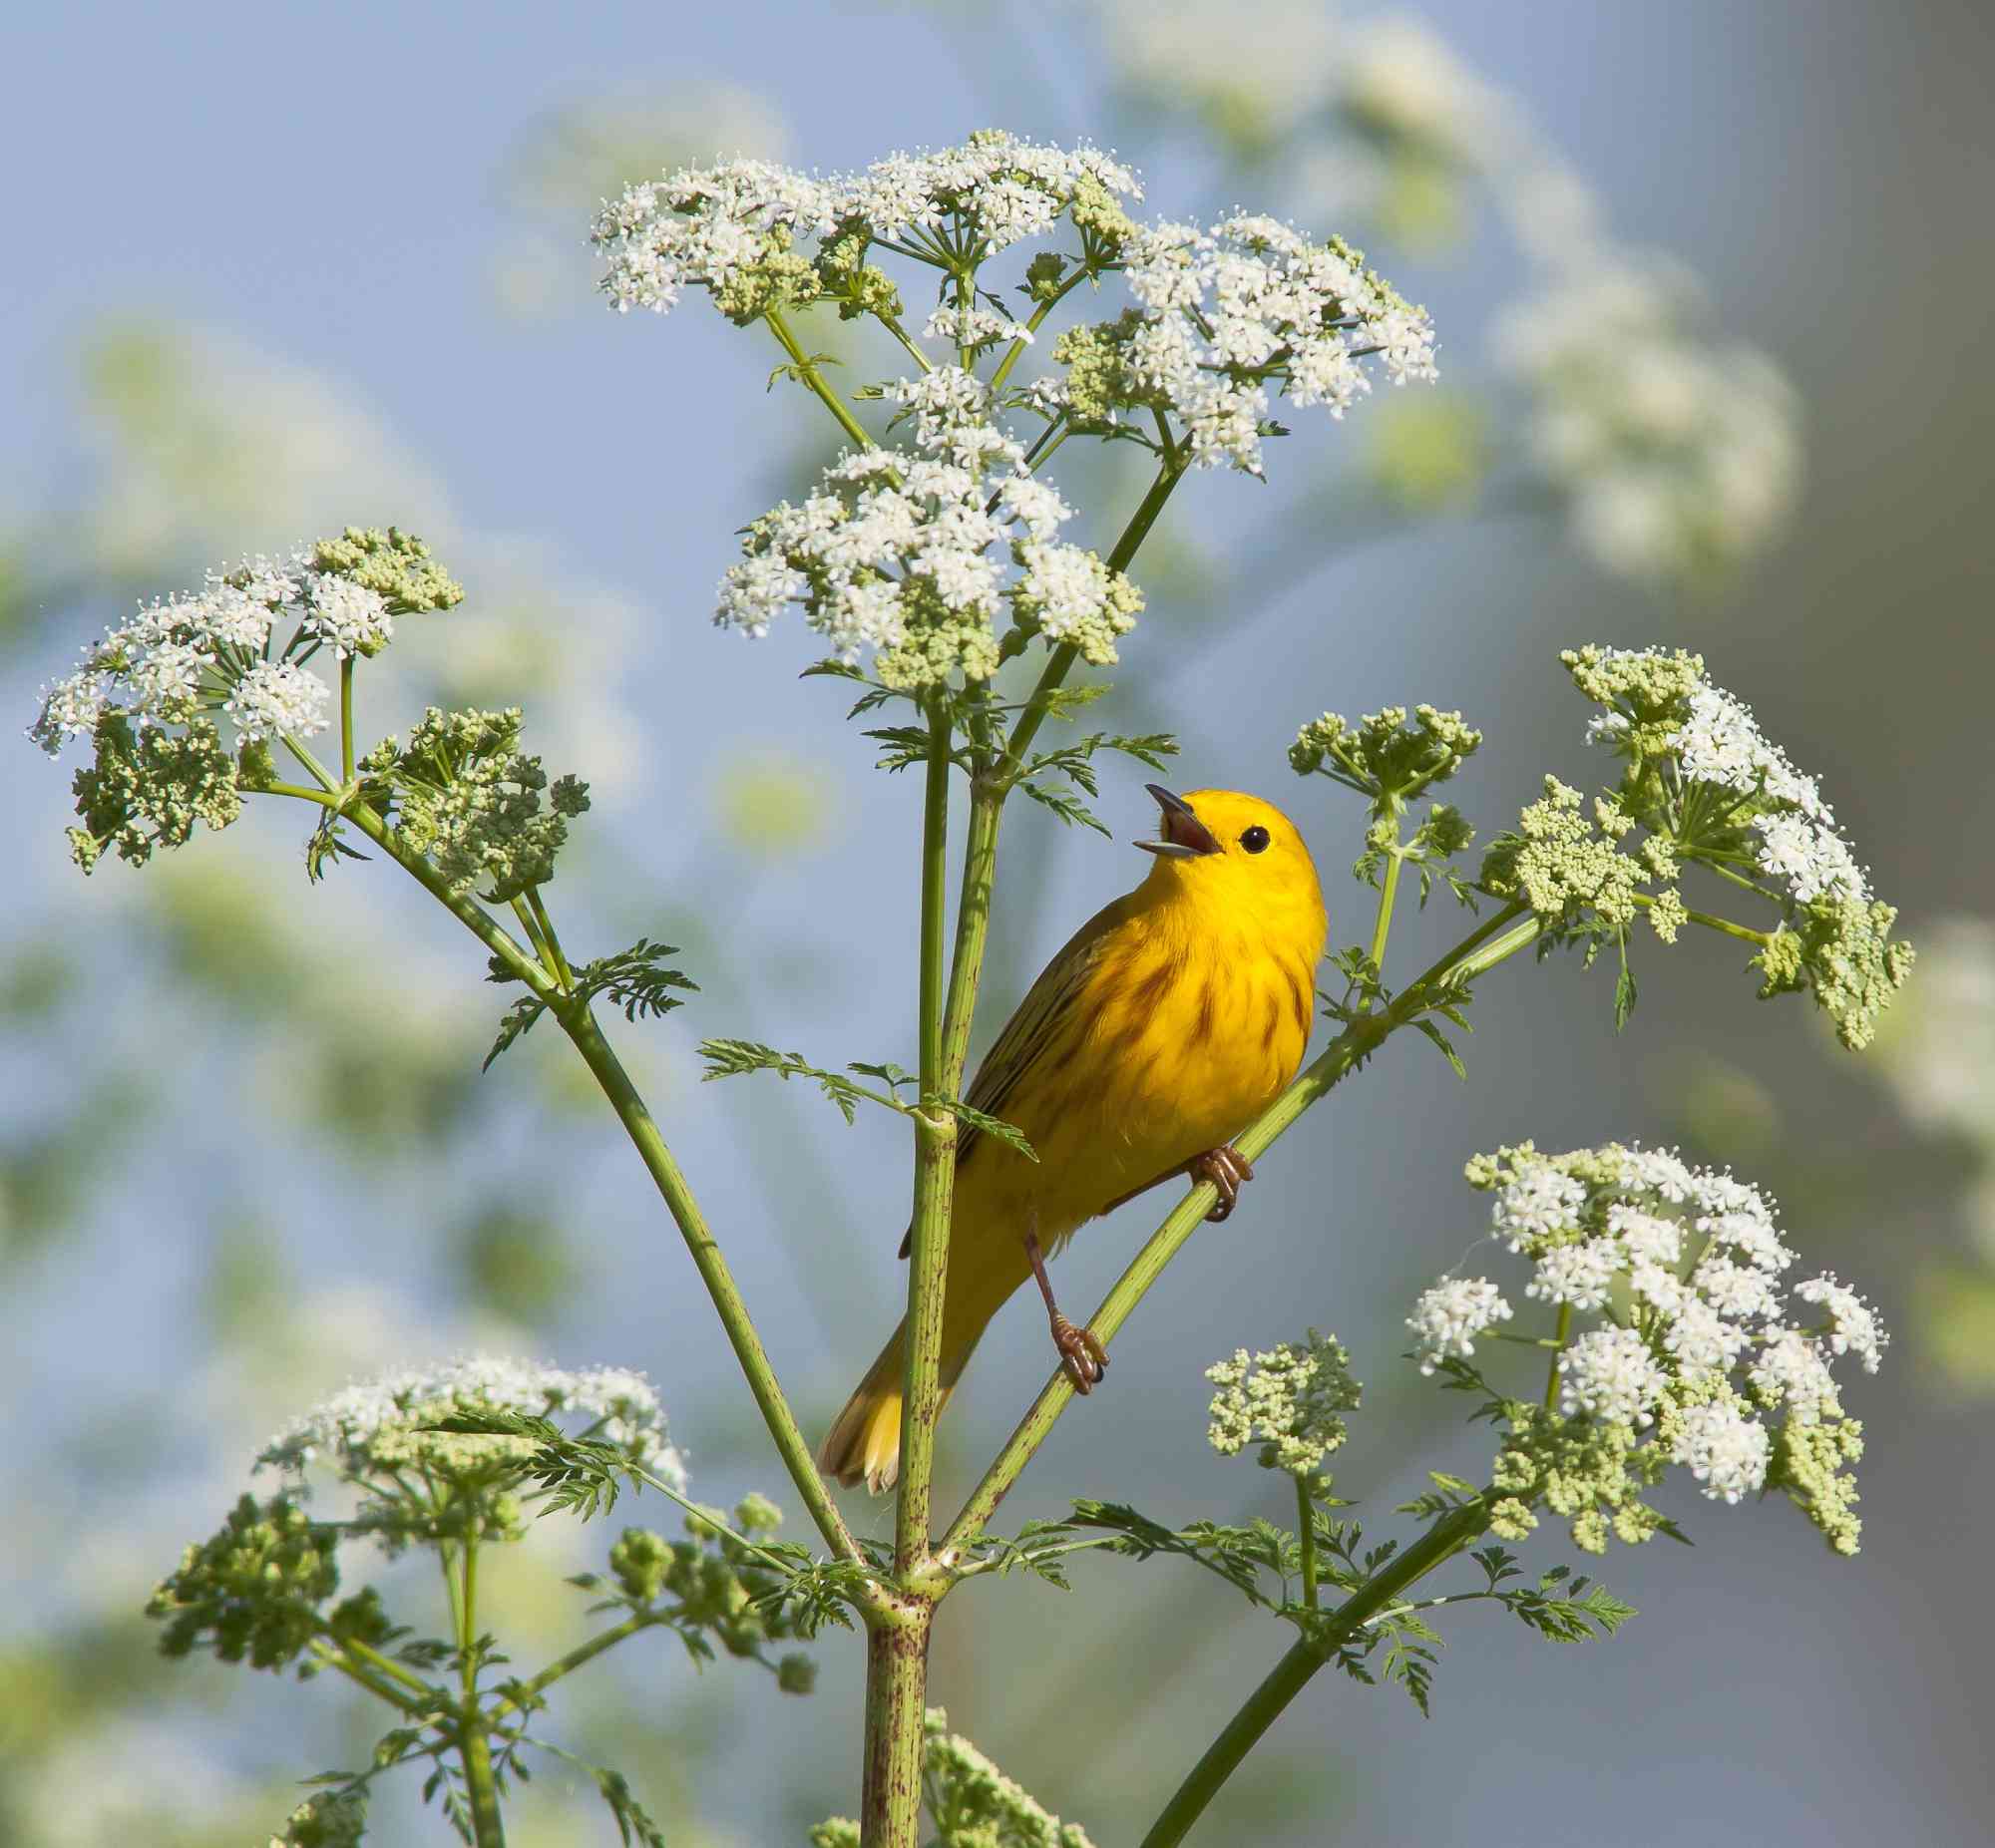 Singing yellow warbler on white flower